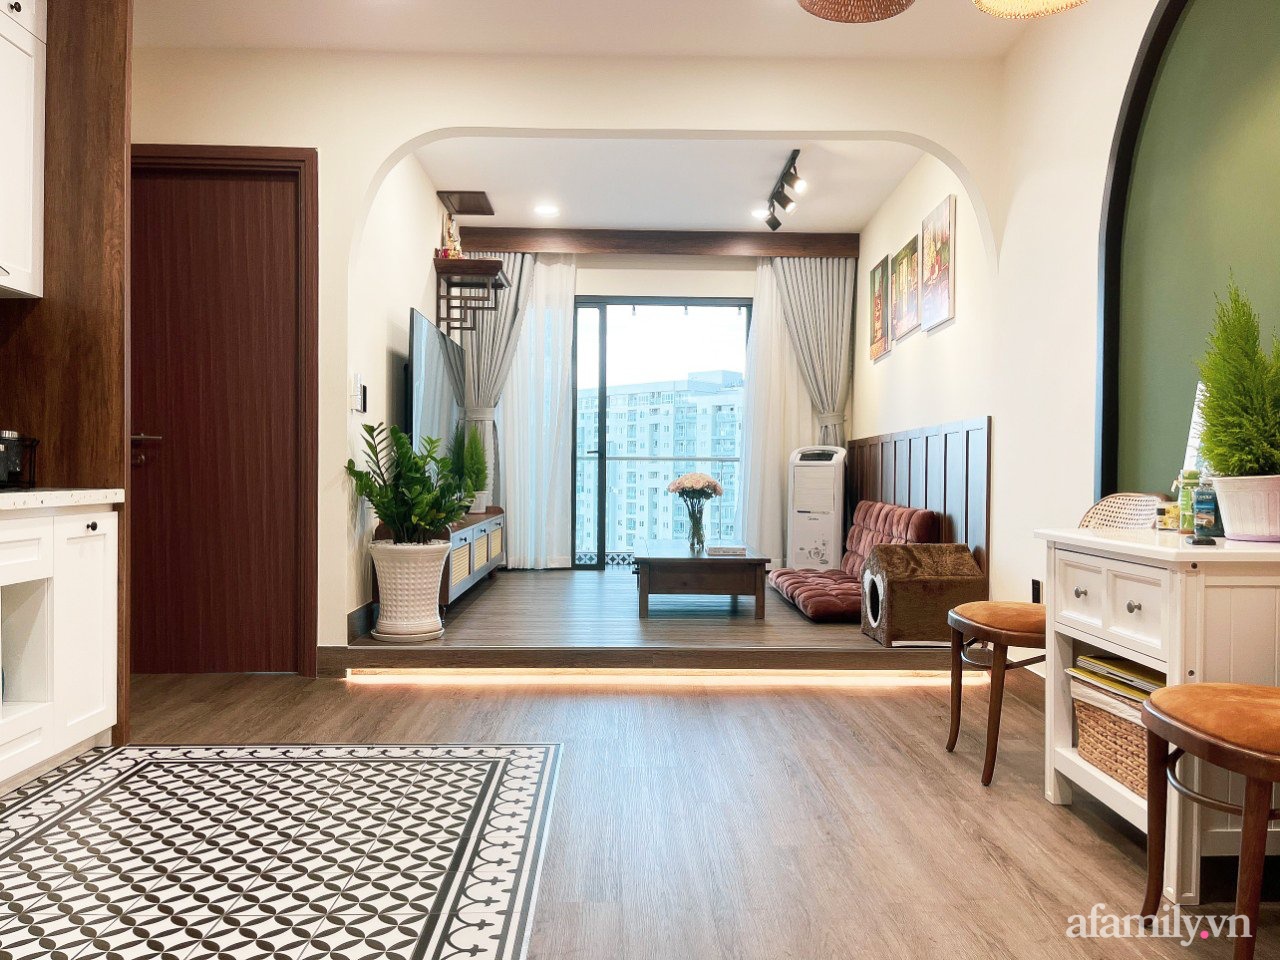 Phong cách Nhật Bản nội thất phòng khách: Tận hưởng sự thanh lịch và phong cách của Nhật Bản bằng cách cải tạo phòng khách của bạn. Từ khung cảnh cây xanh đến những chi tiết nhỏ trong trang trí, tất cả sẽ tạo ra một không gian ấm áp, tinh tế cho bạn và gia đình. Xem tận mắt các mẫu thiết kế nội thất phòng khách phong cách Nhật Bản trong hình ảnh liên quan.